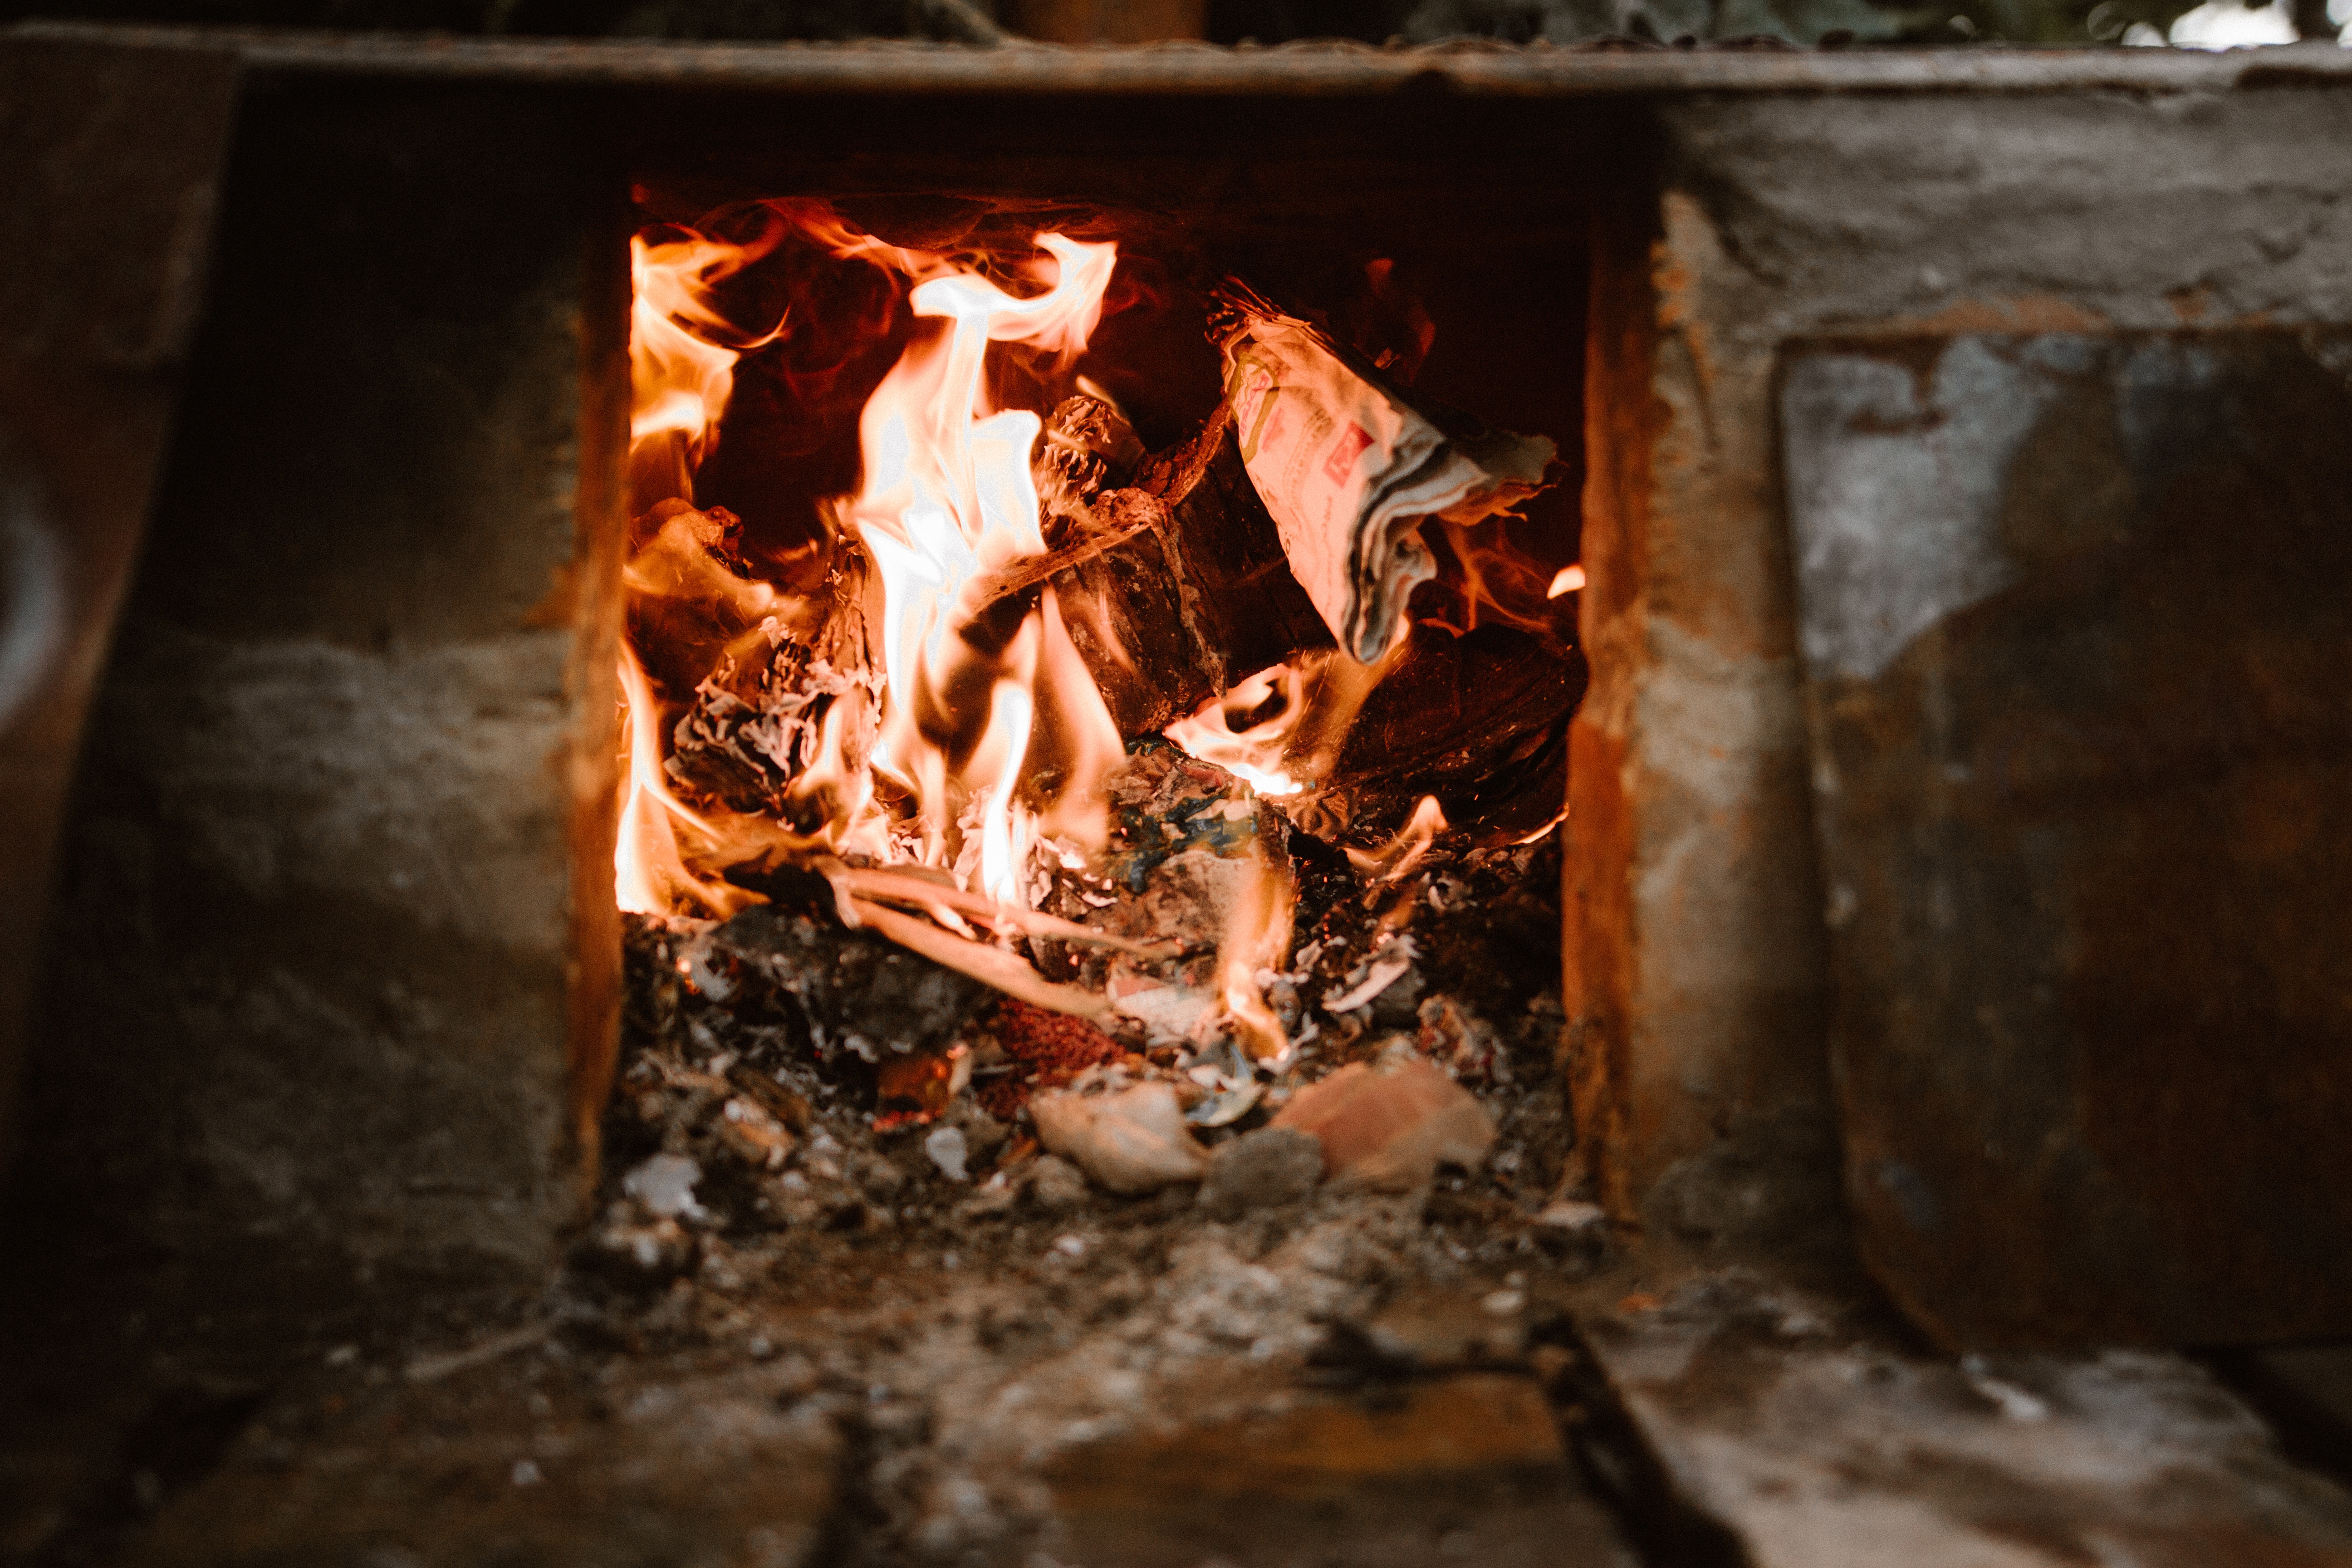 wood stove